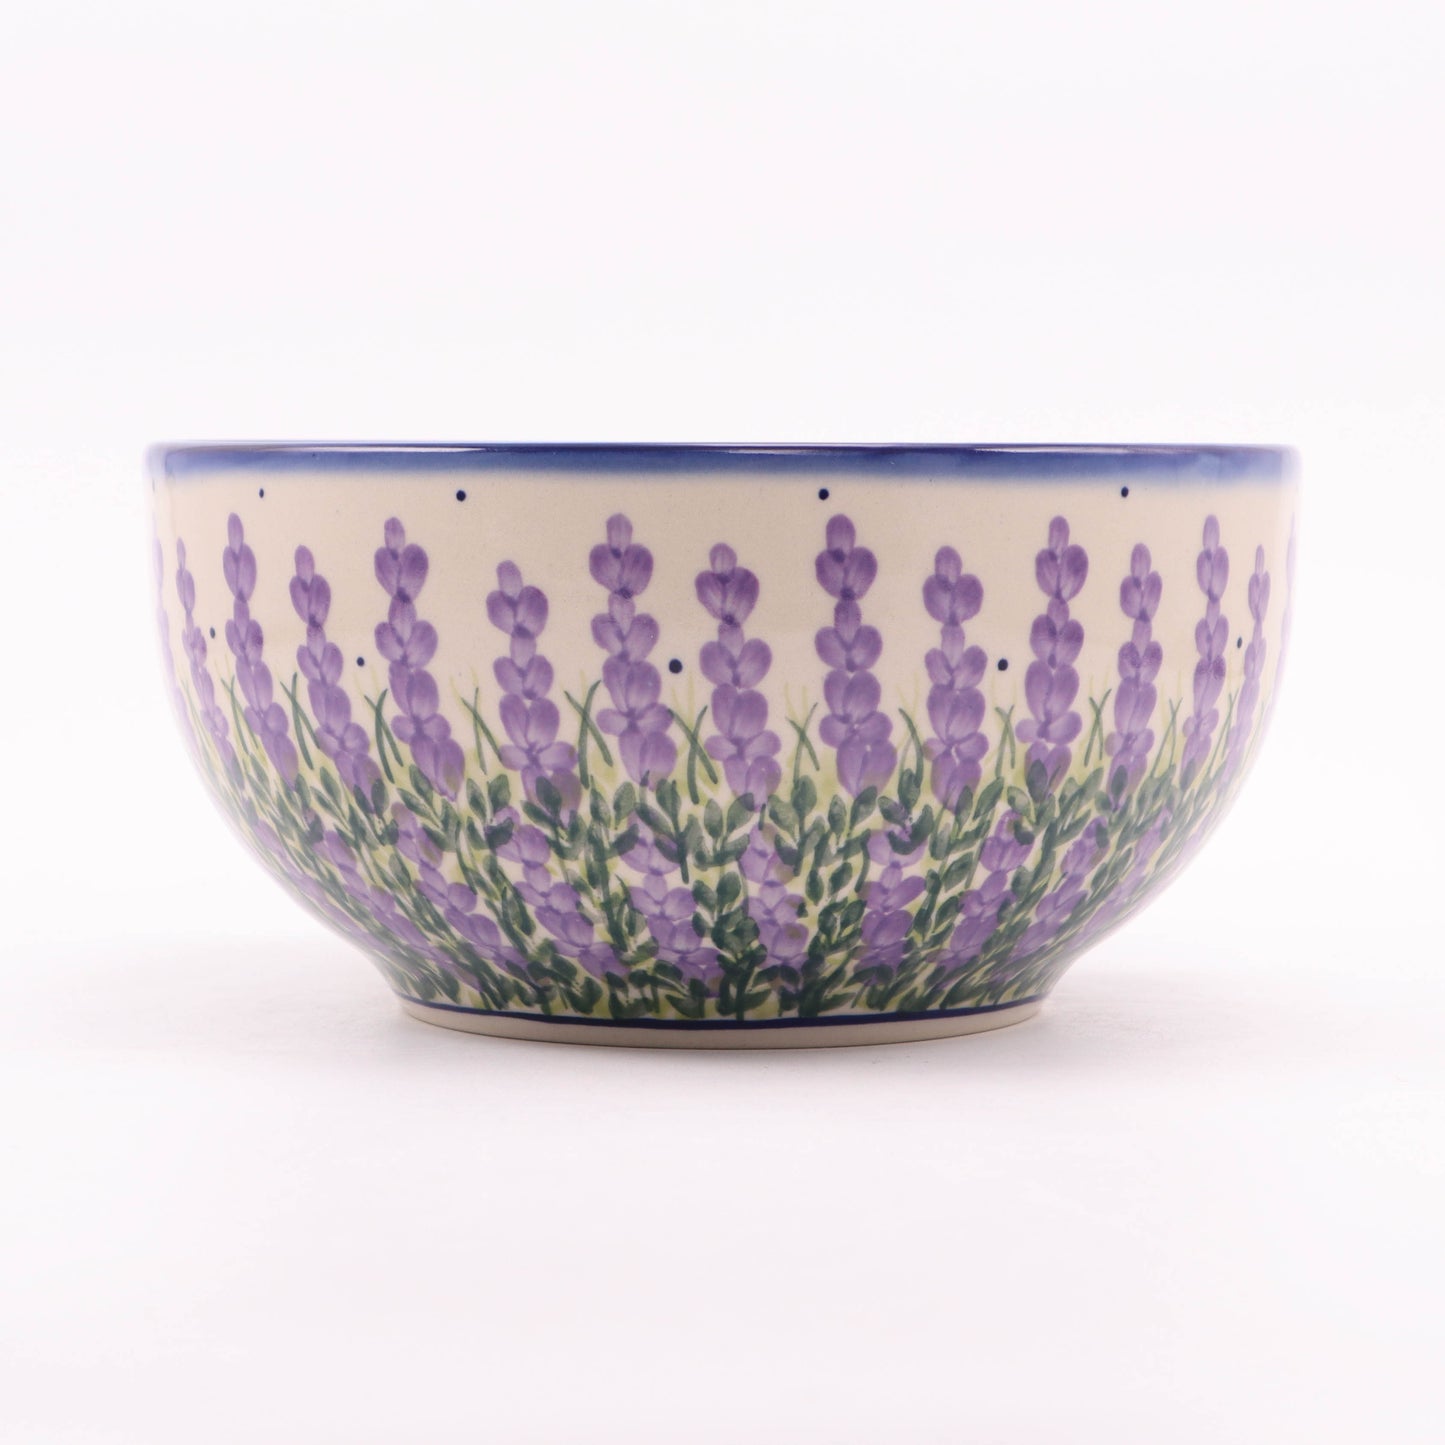 9"x4.5" Bowl. Pattern: Lavender Dreams